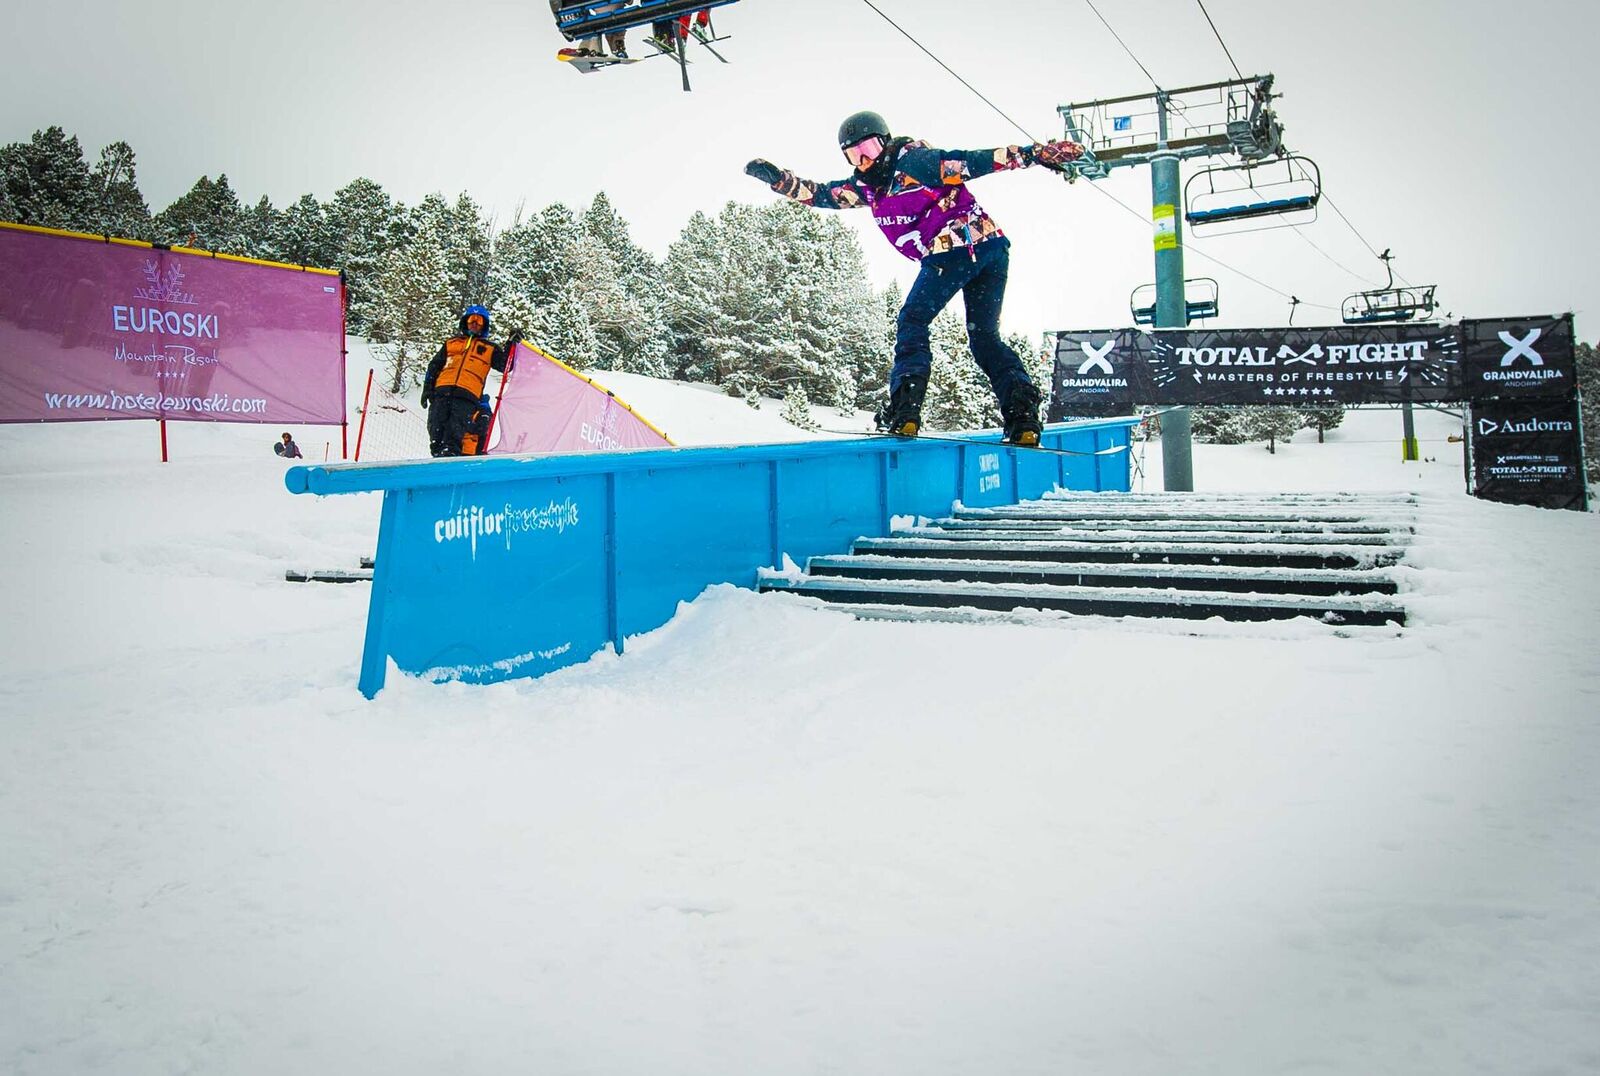 Una María Hidalgo inspiradísima sube al podio en el Grandvalira Total Fight snowboard